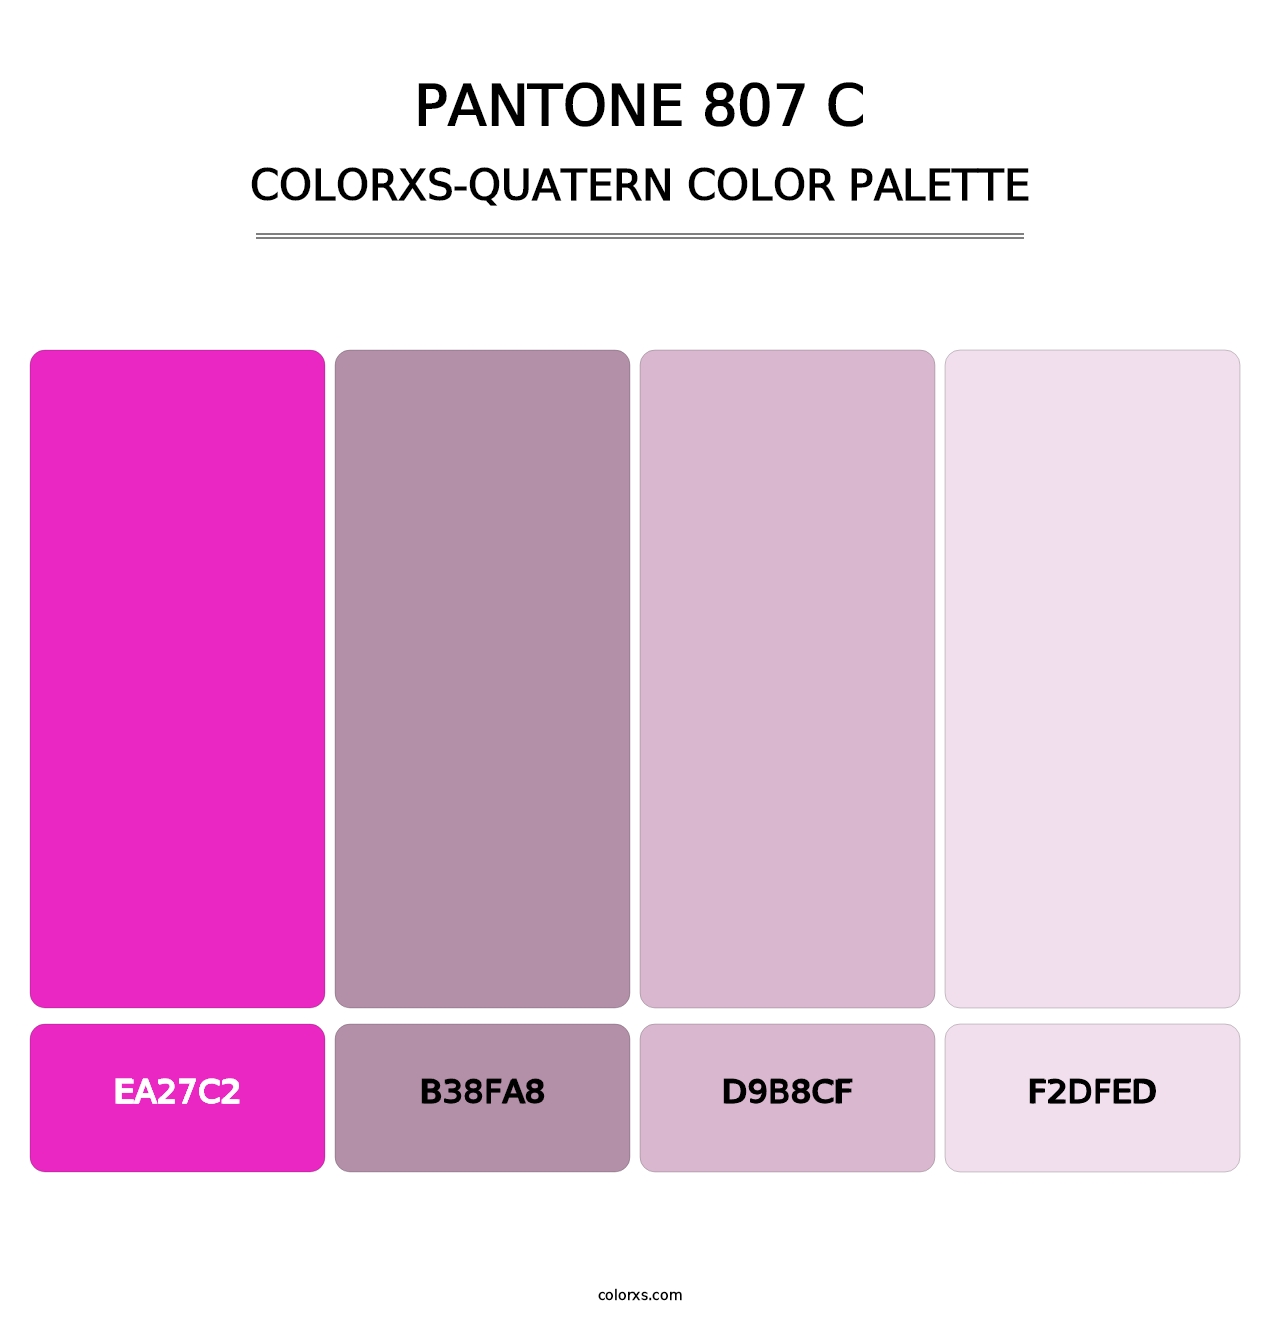 PANTONE 807 C - Colorxs Quatern Palette